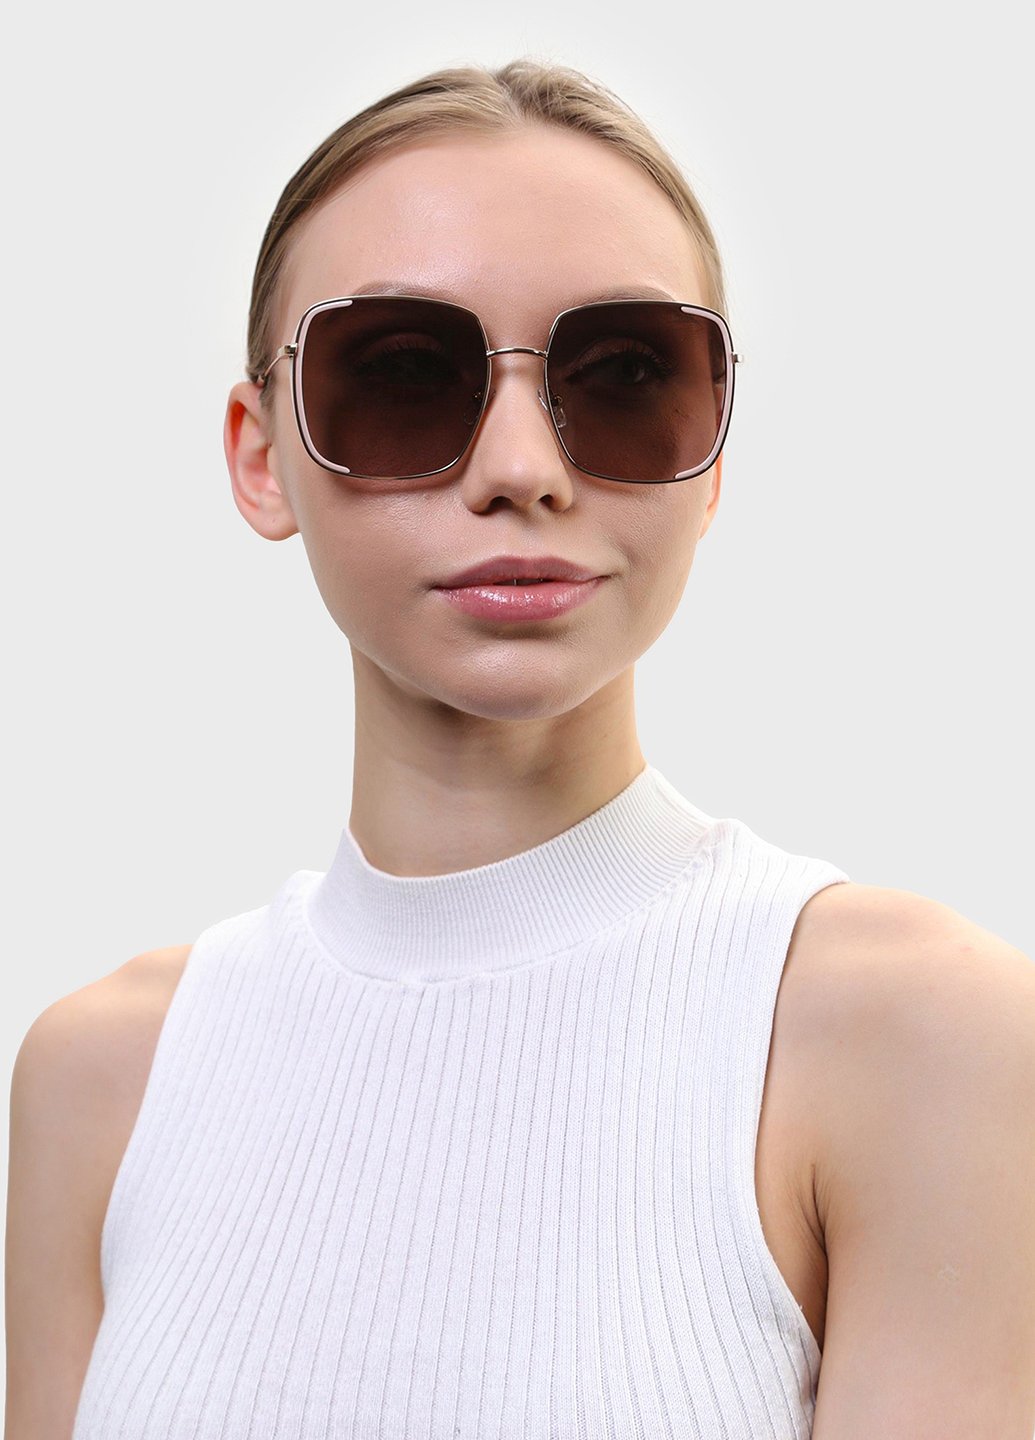 Купить Женские солнцезащитные очки Katrin Jones с поляризацией KJ0852 180050 - Золотистый в интернет-магазине